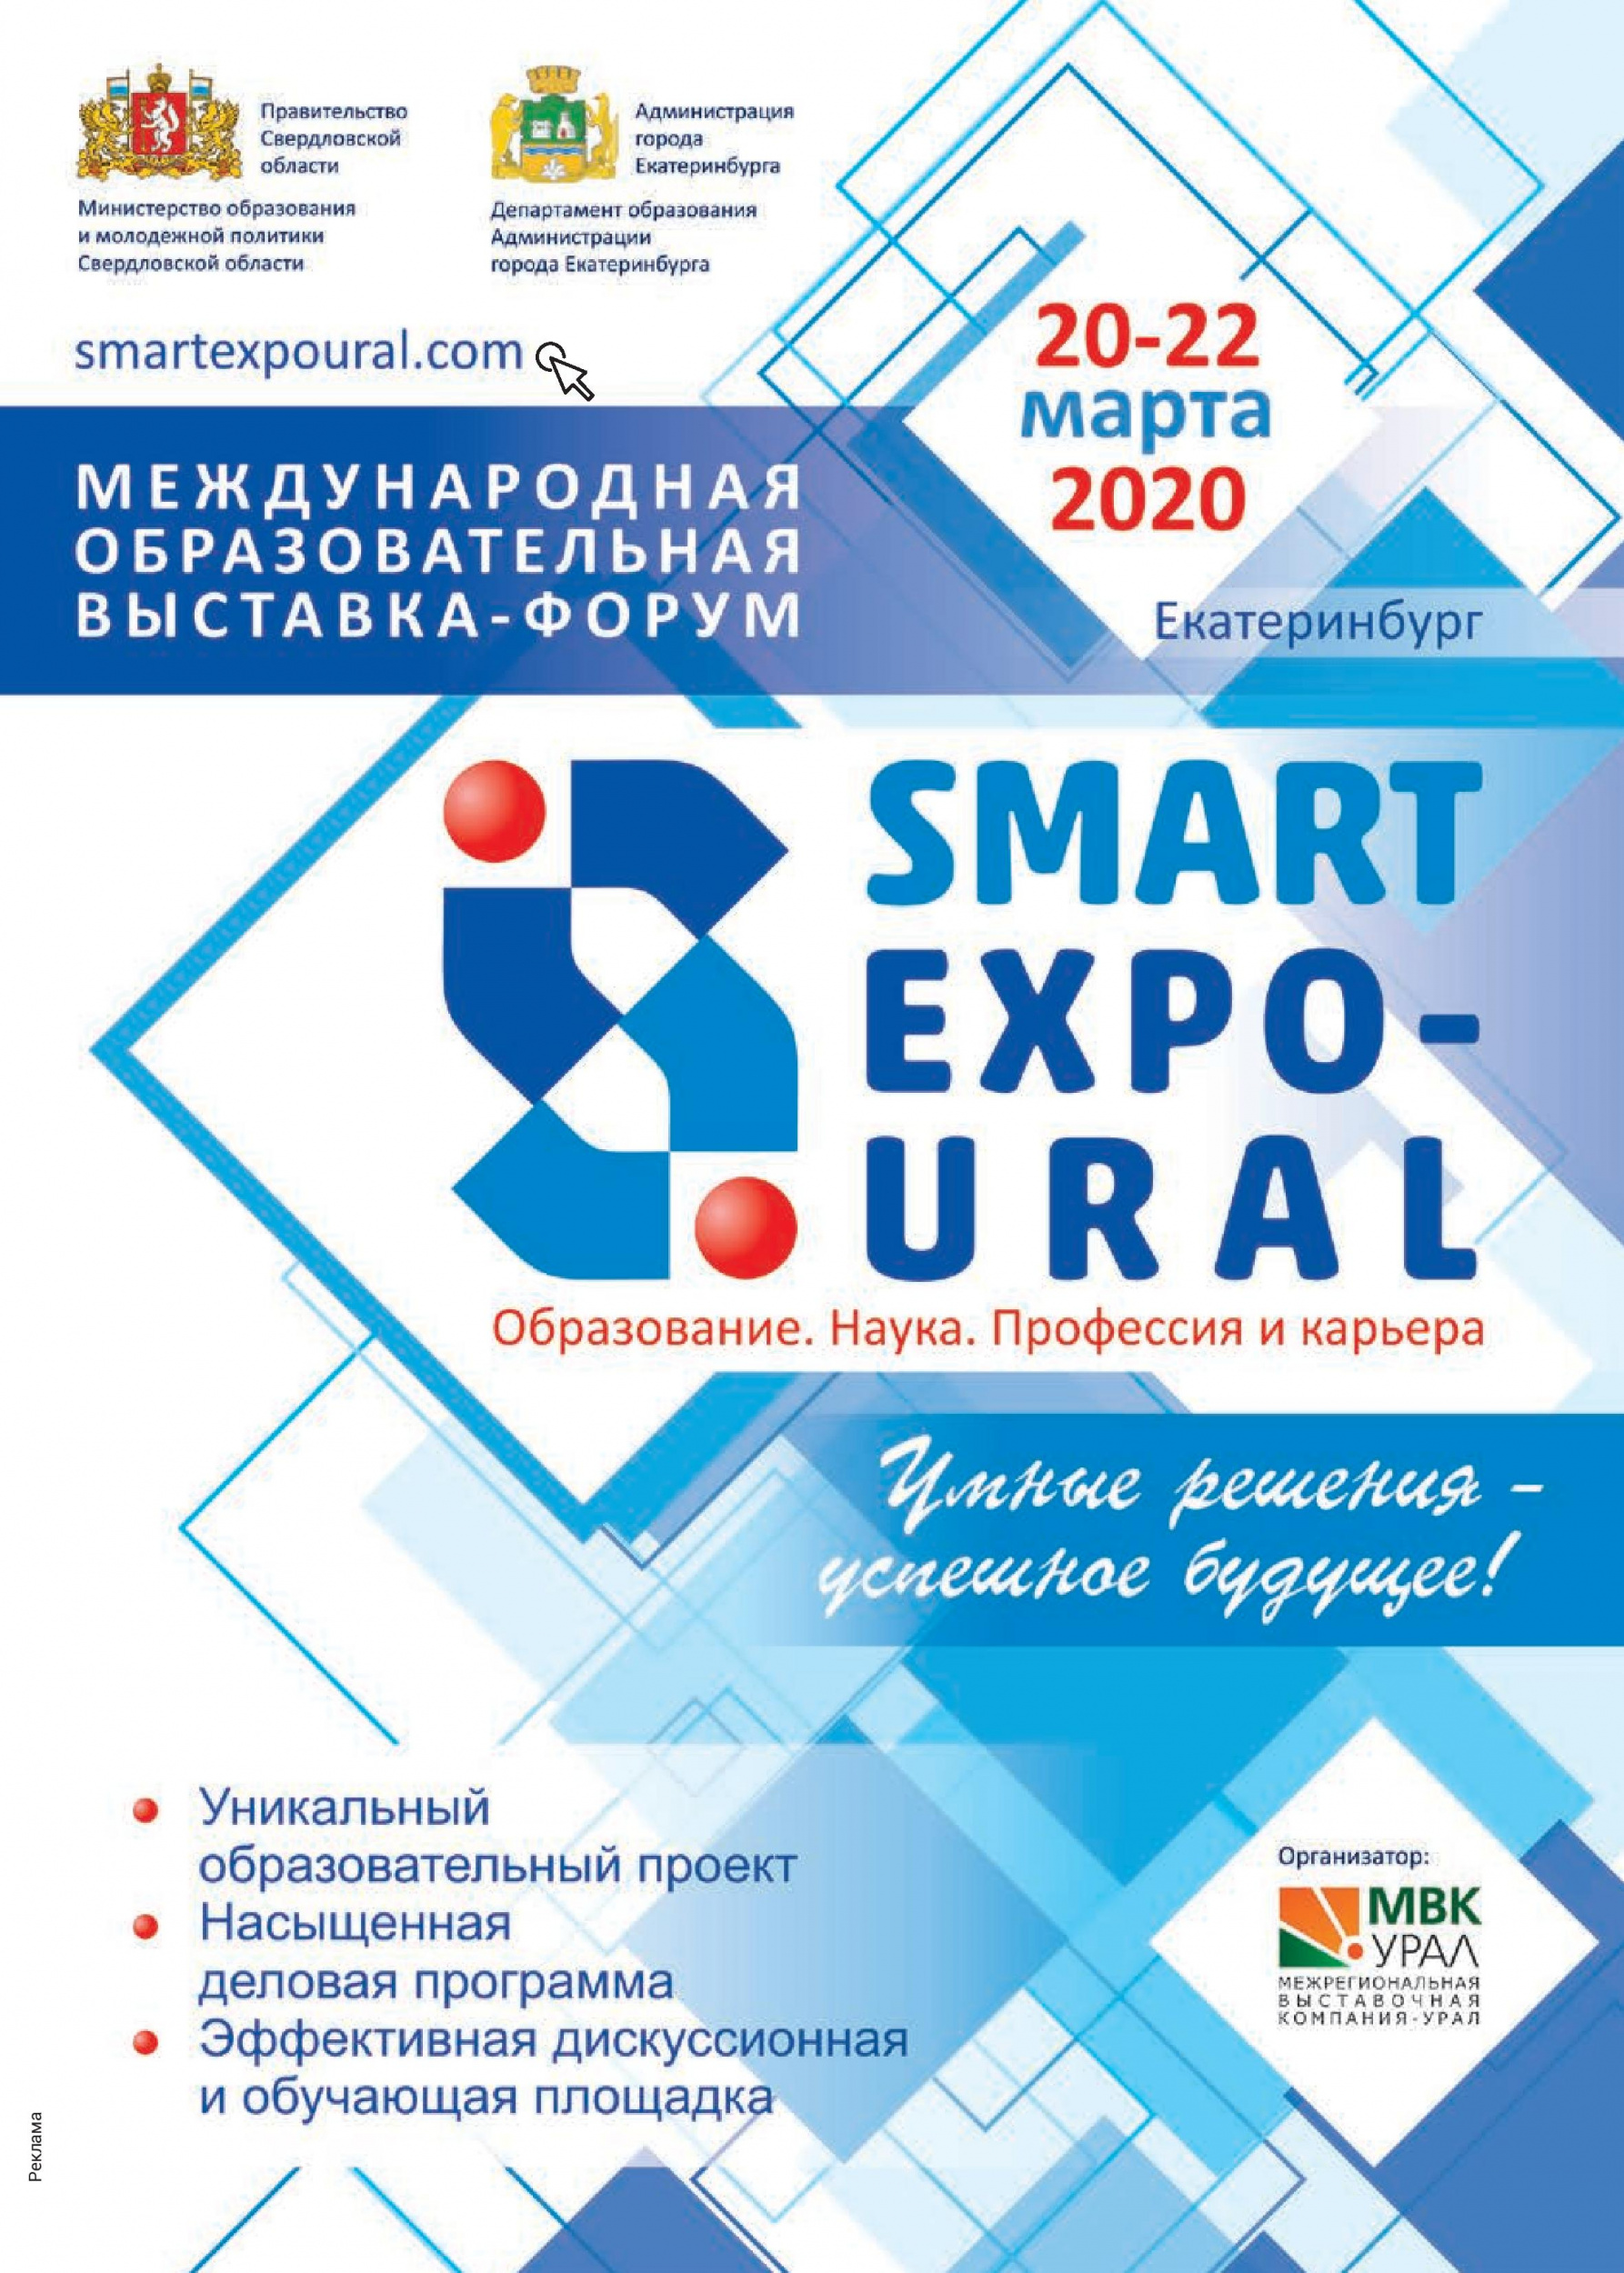 Международная образовательная выставка-форум SMART EXPO-URAL